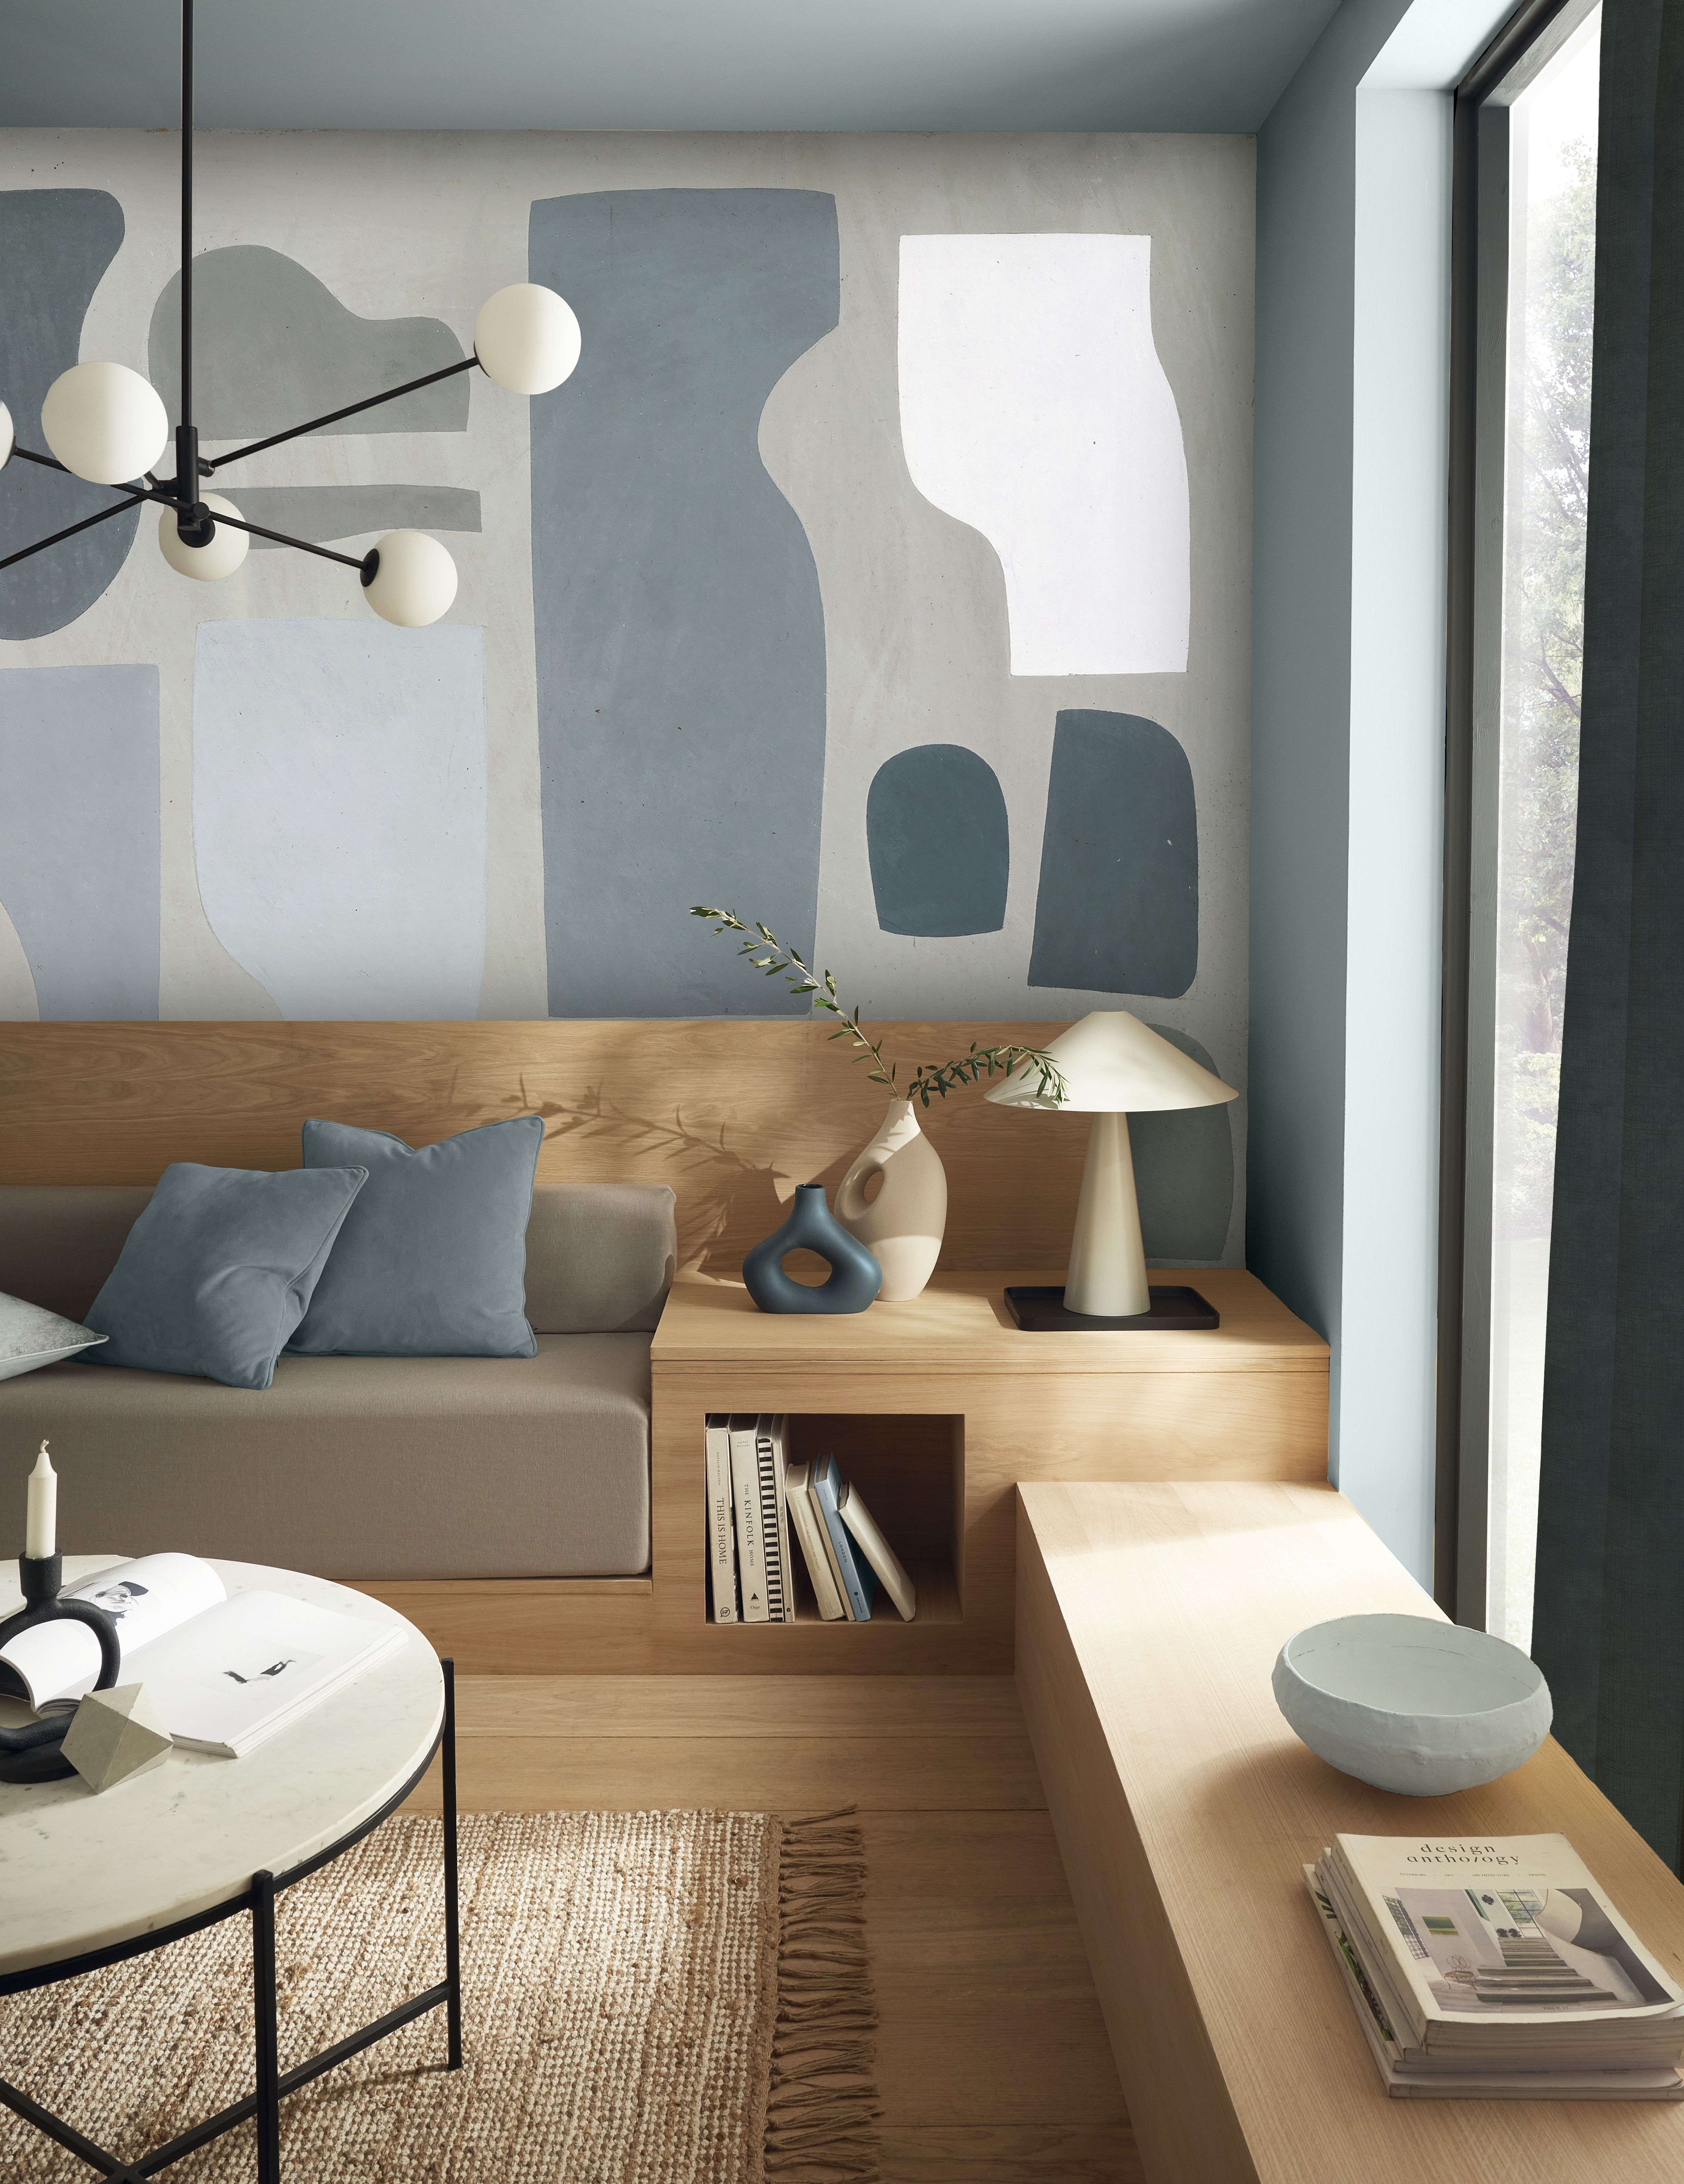 Wallpaper Ideas for the Living Room | Living Room Wallpaper Ideas 2021-saigonsouth.com.vn